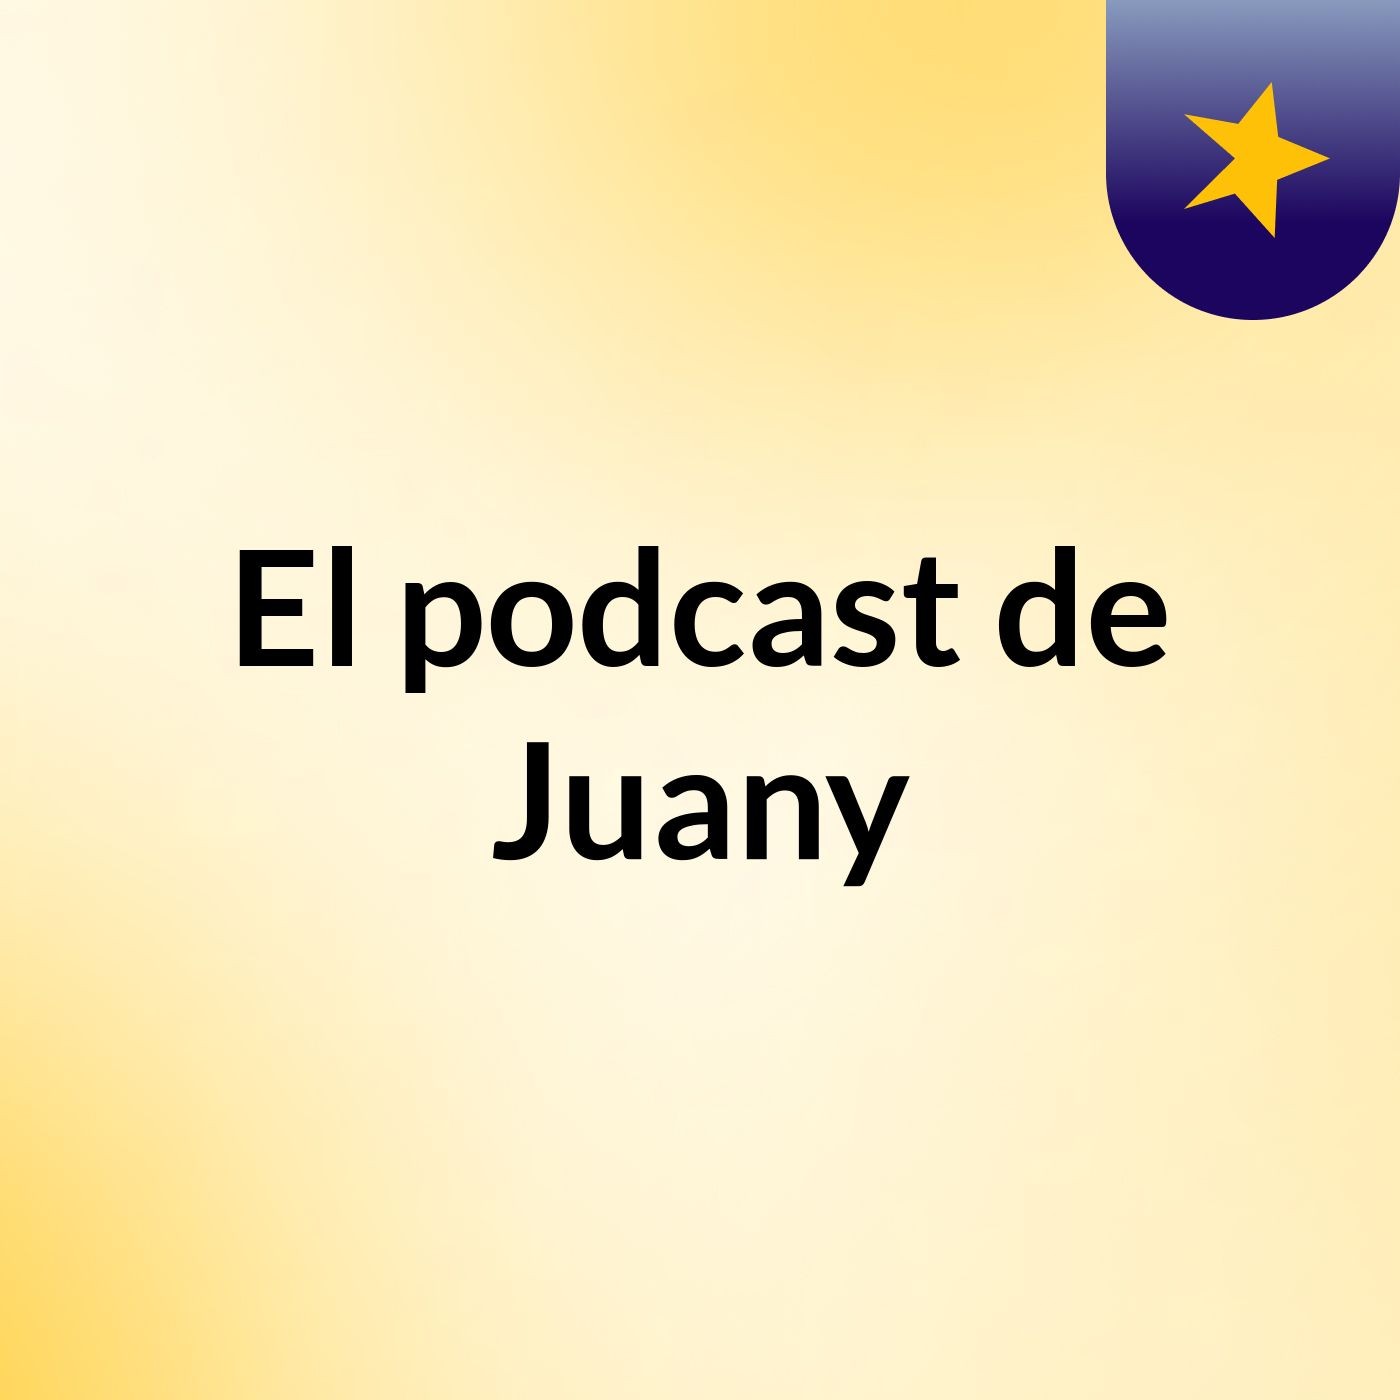 El podcast de Juany